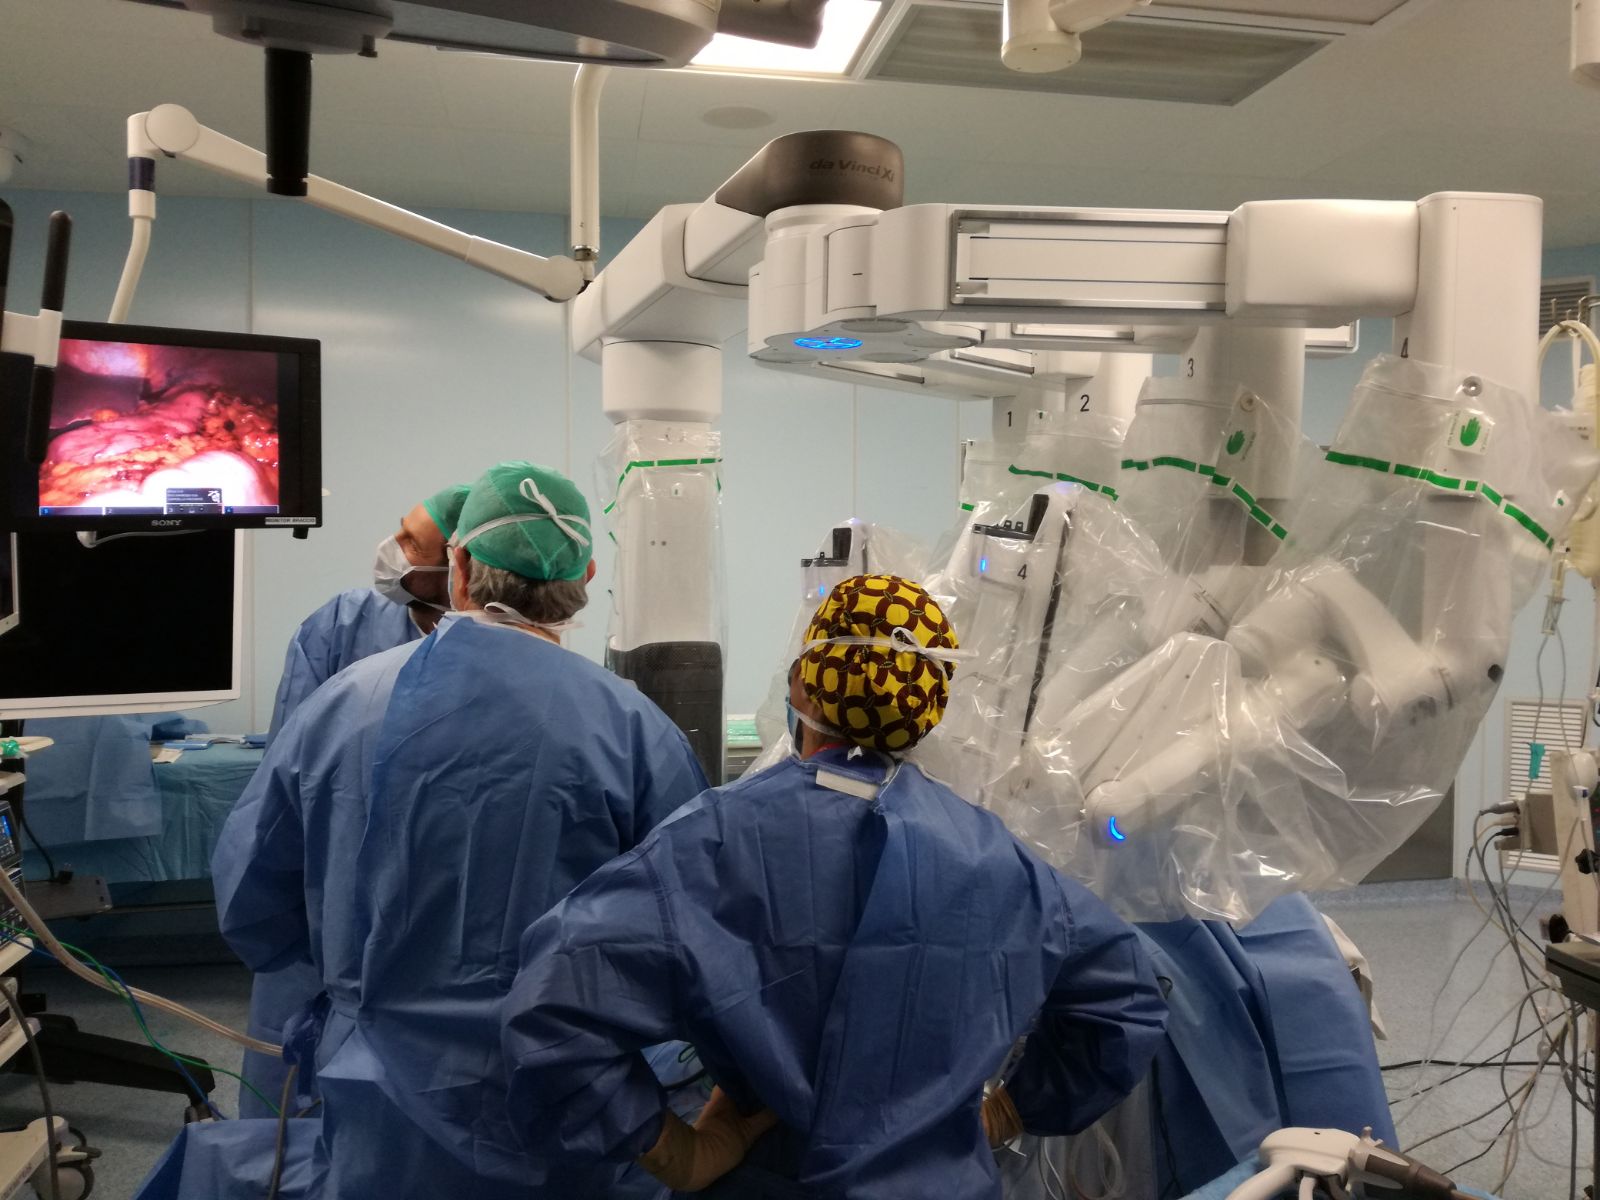 Ospedale di Terni: arriva il sistema robotico di ultima generazione “Da Vinci Xi”